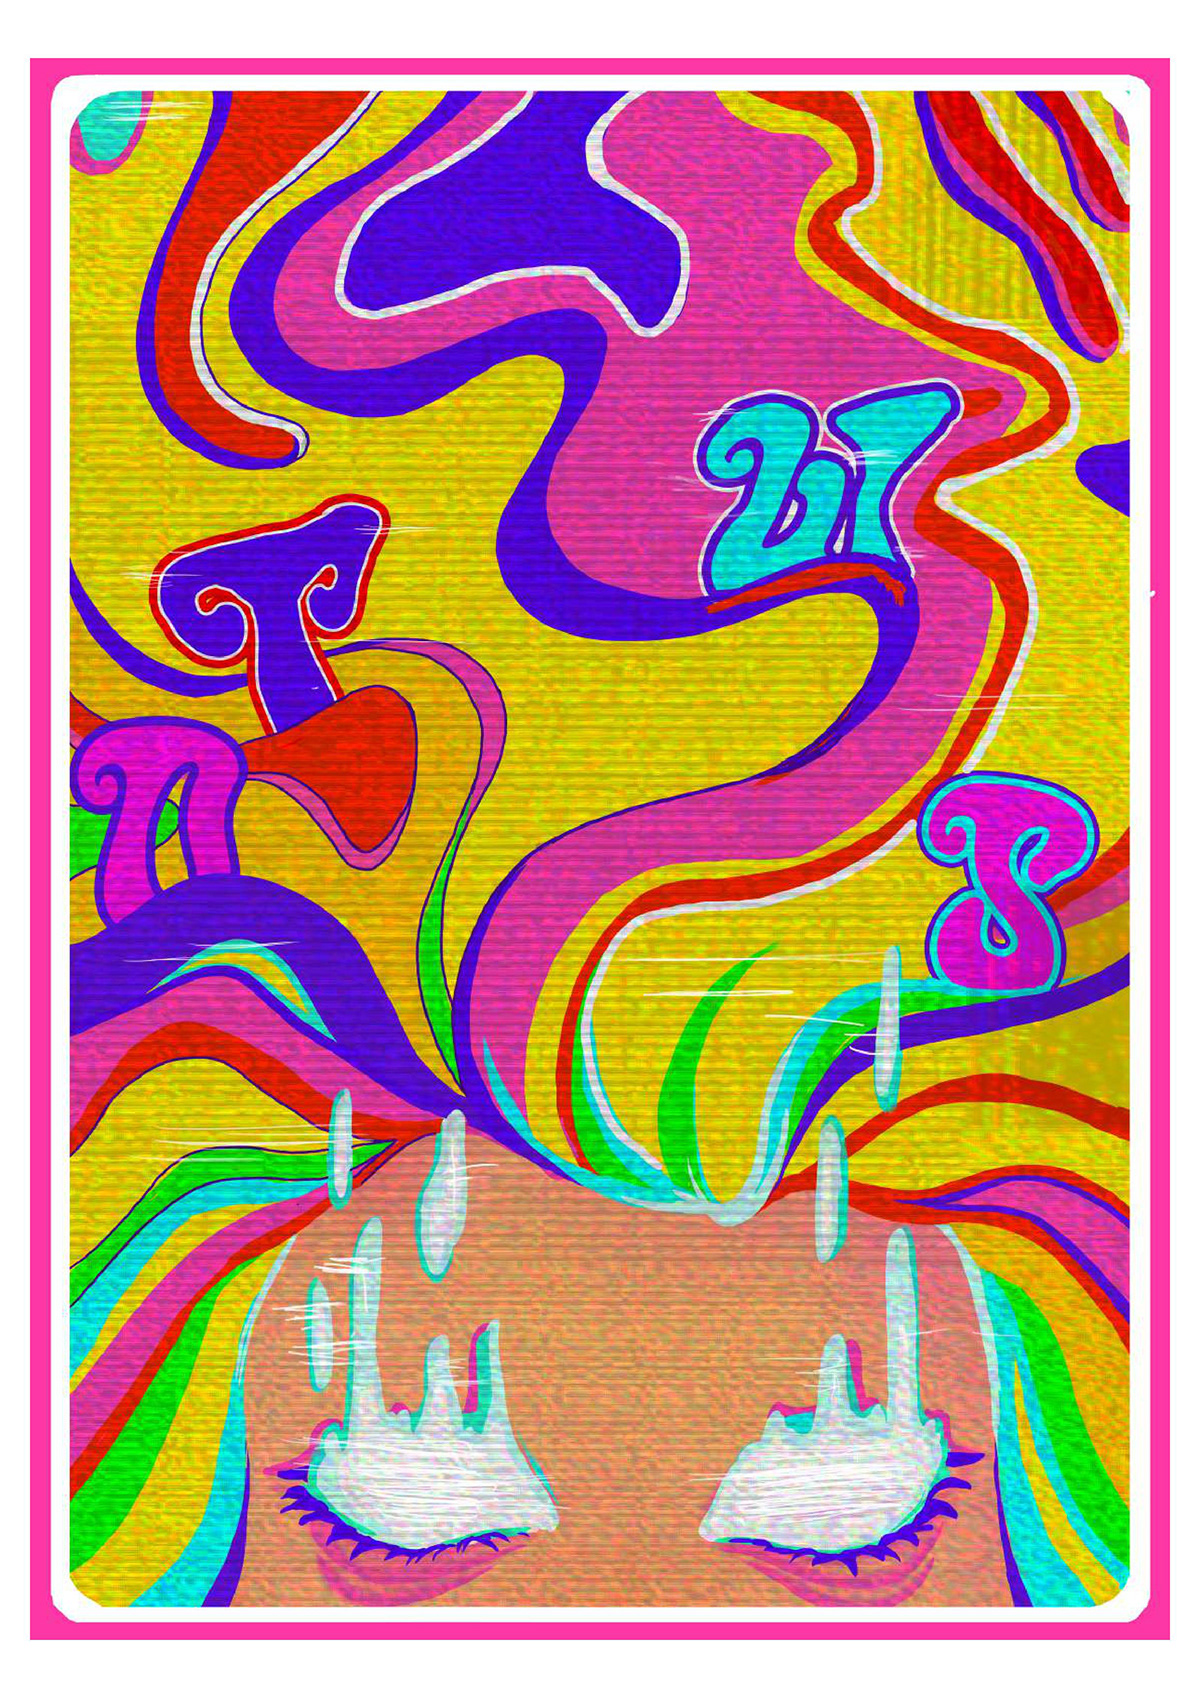 ILLUSTRATION  poster psychedelic art digital illustration artwork